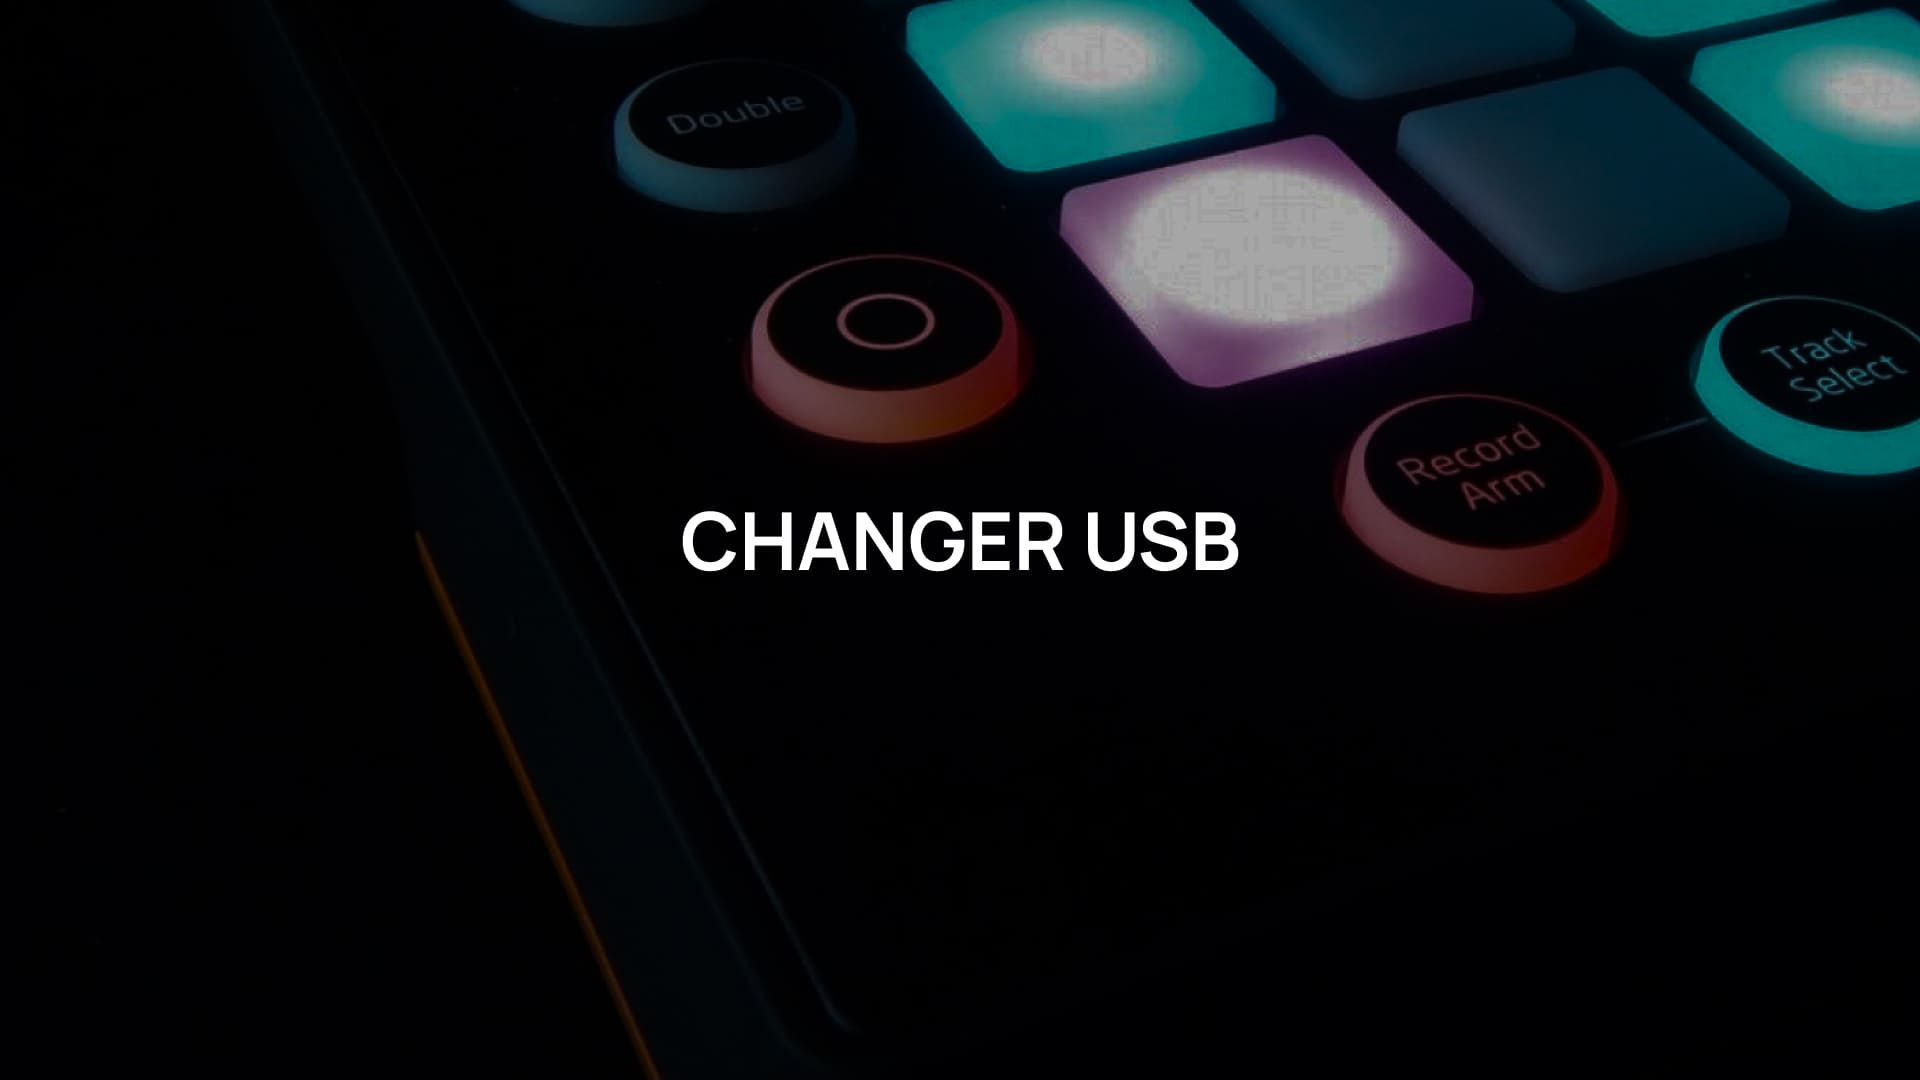 Программируемые пульты Changer USB